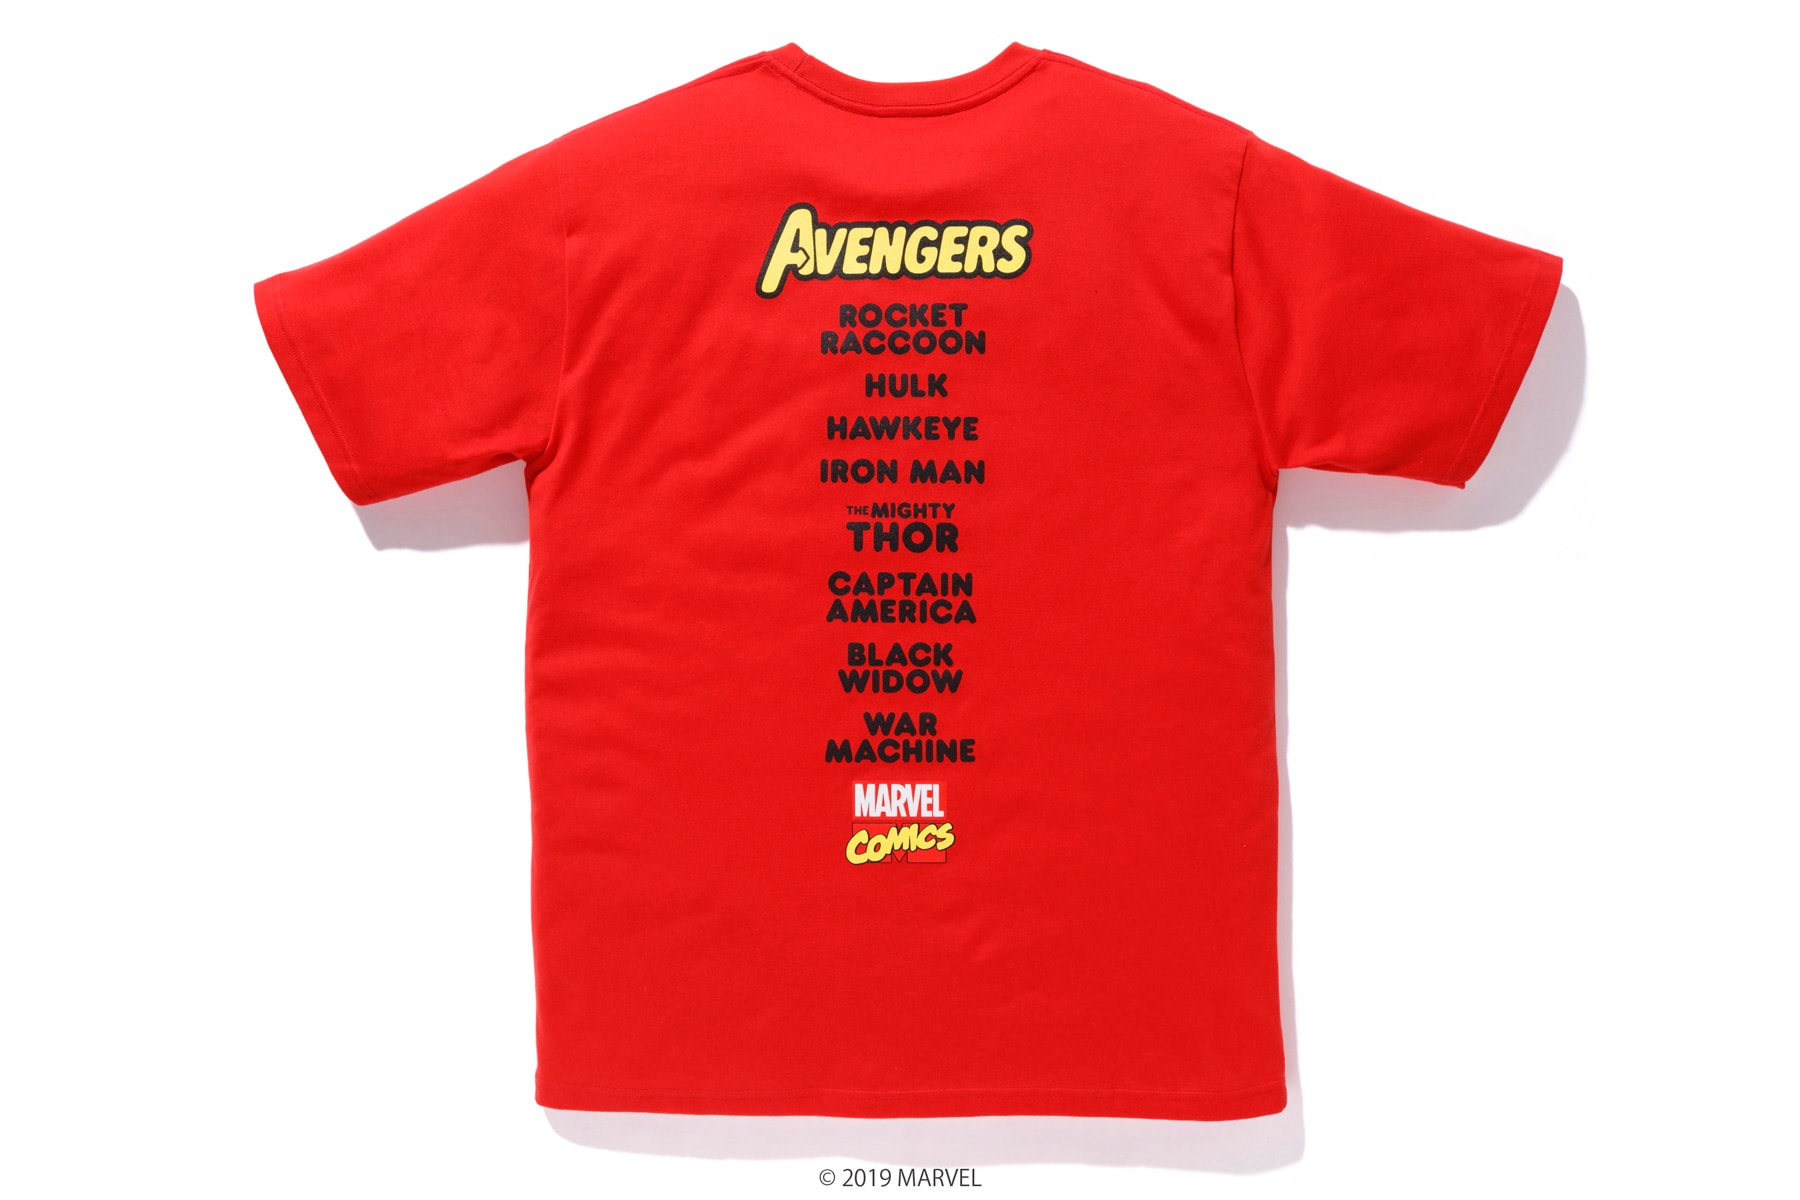 '어벤져스: 엔드게임' 굿즈의 끝장판, 베이프 x 마블 코믹스 협업 컬렉션 2019 캡틴 아메리카 아이언맨 